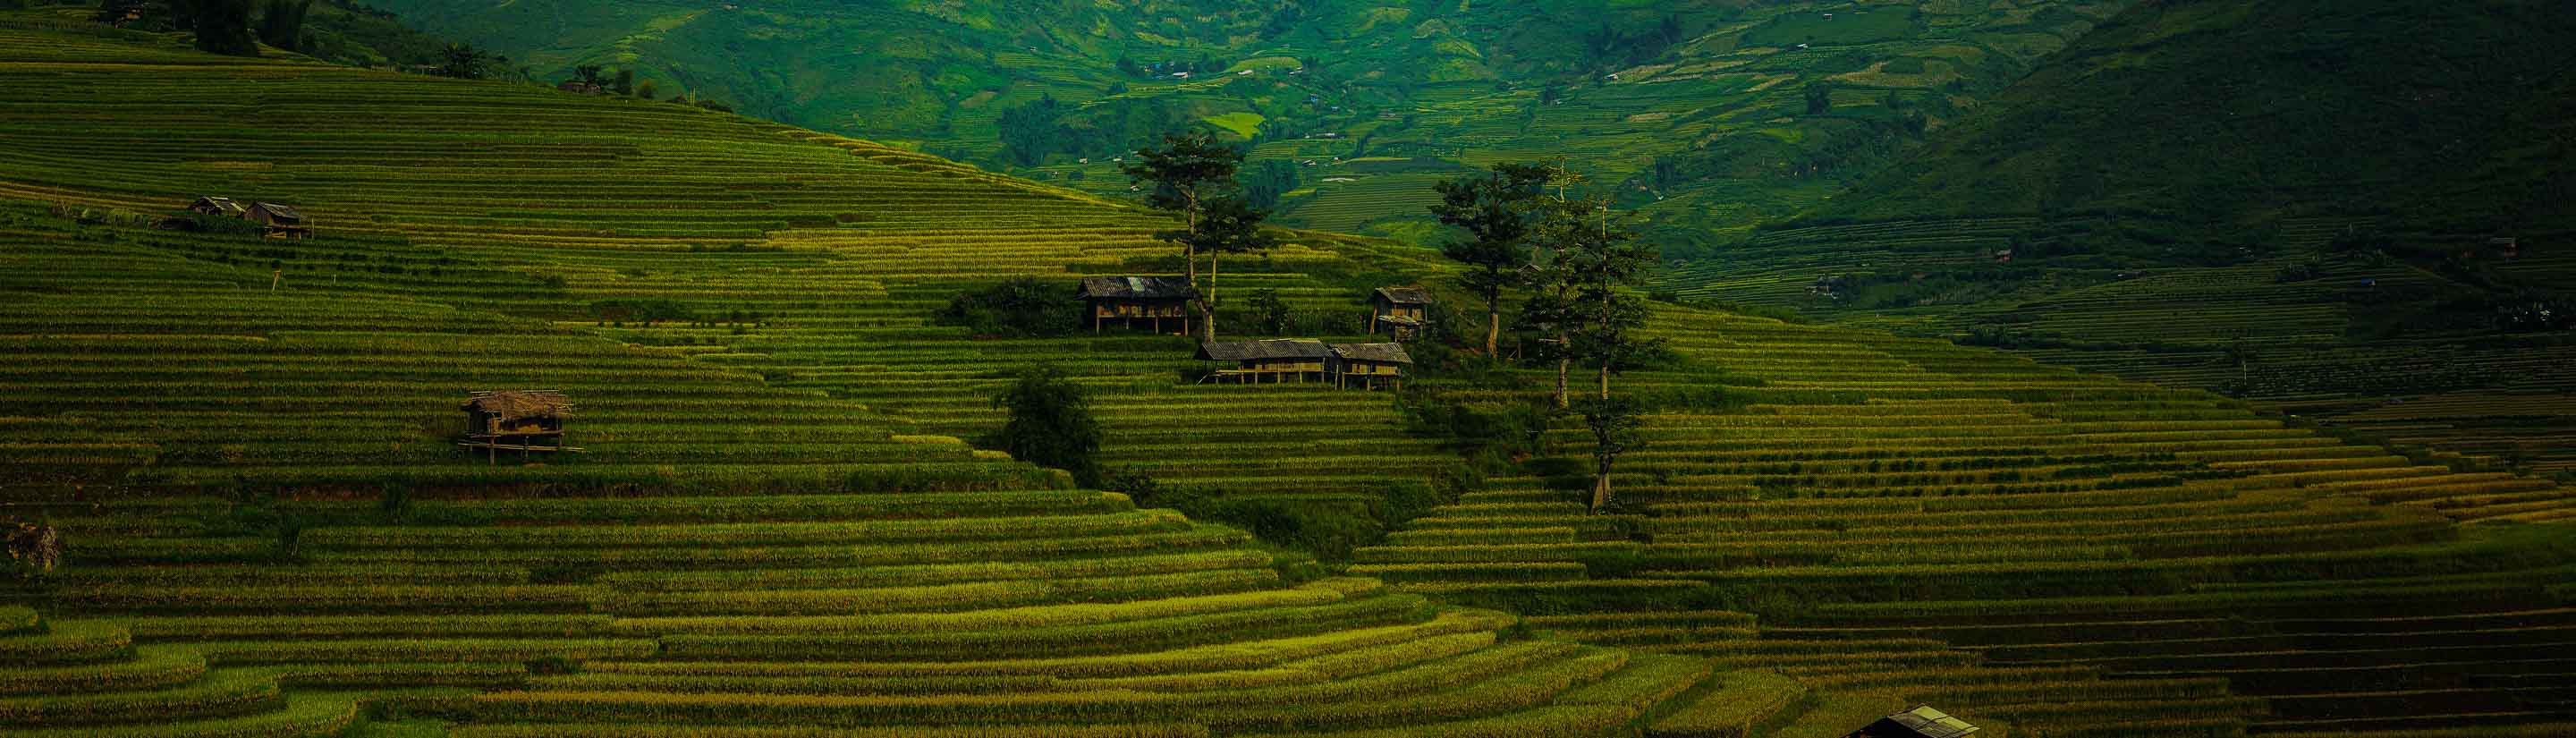 Grüne Reisterrassen auf einer Reise in China